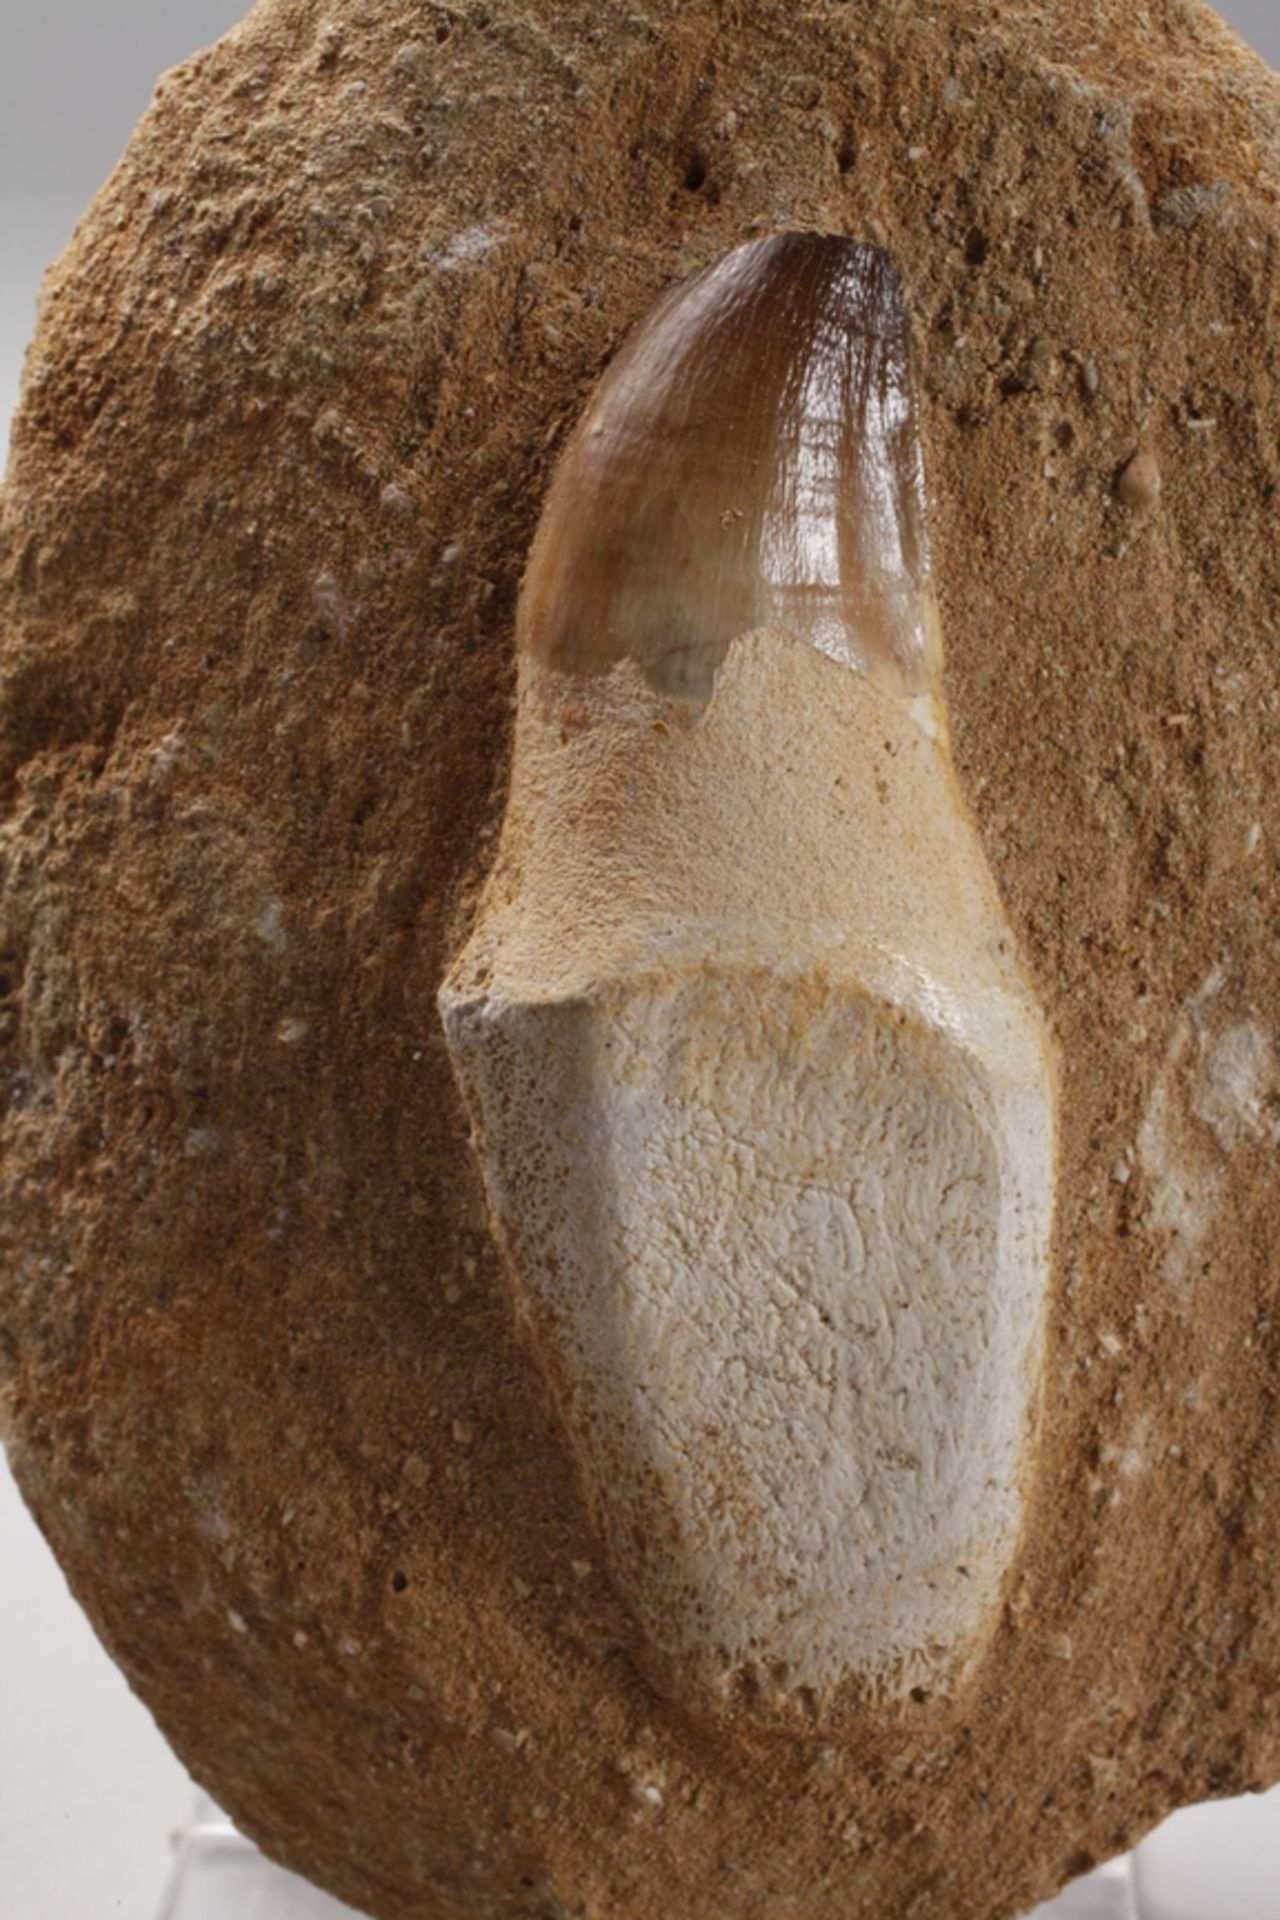 Zahn eines Mesosauriers/Marokko - Bild 2 aus 4